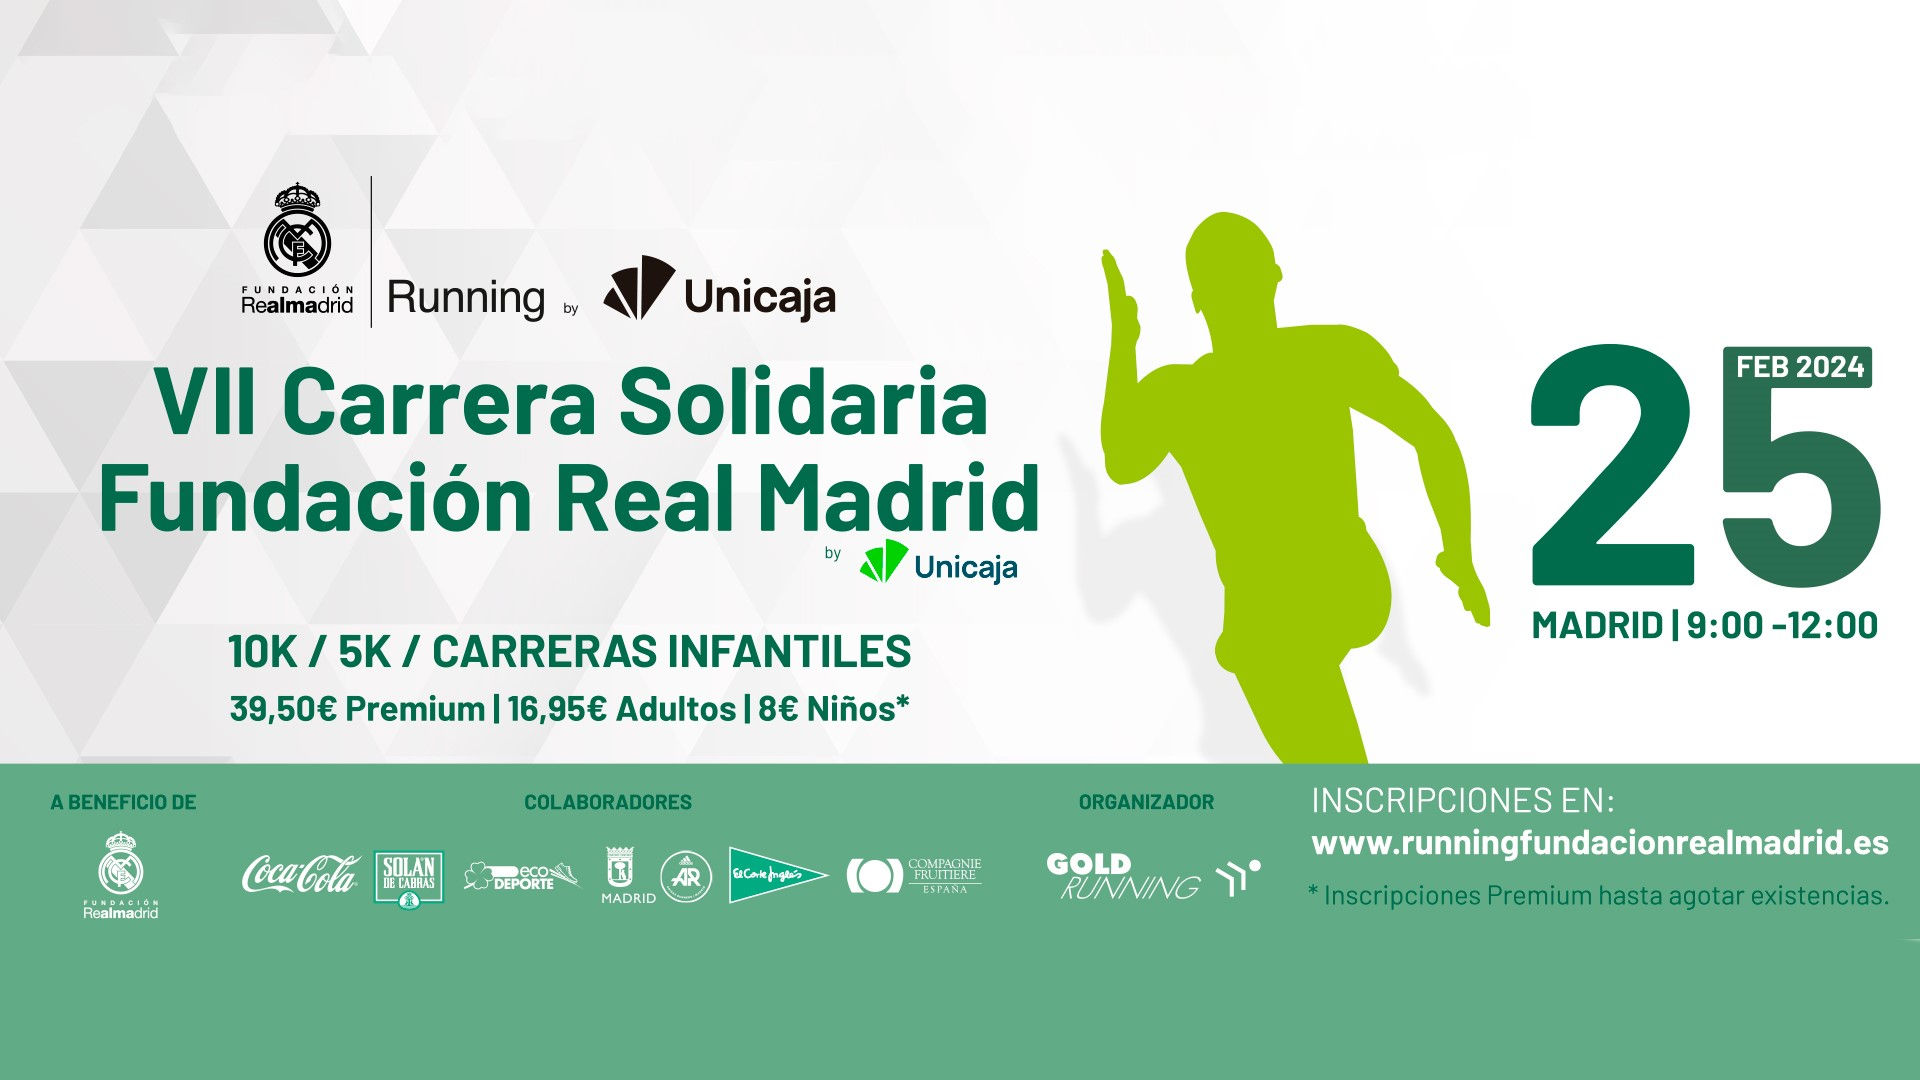 Hoy se celebra en Madrid la VII Carrera Solidaria Fundación Real Madrid by Unicaja Banco